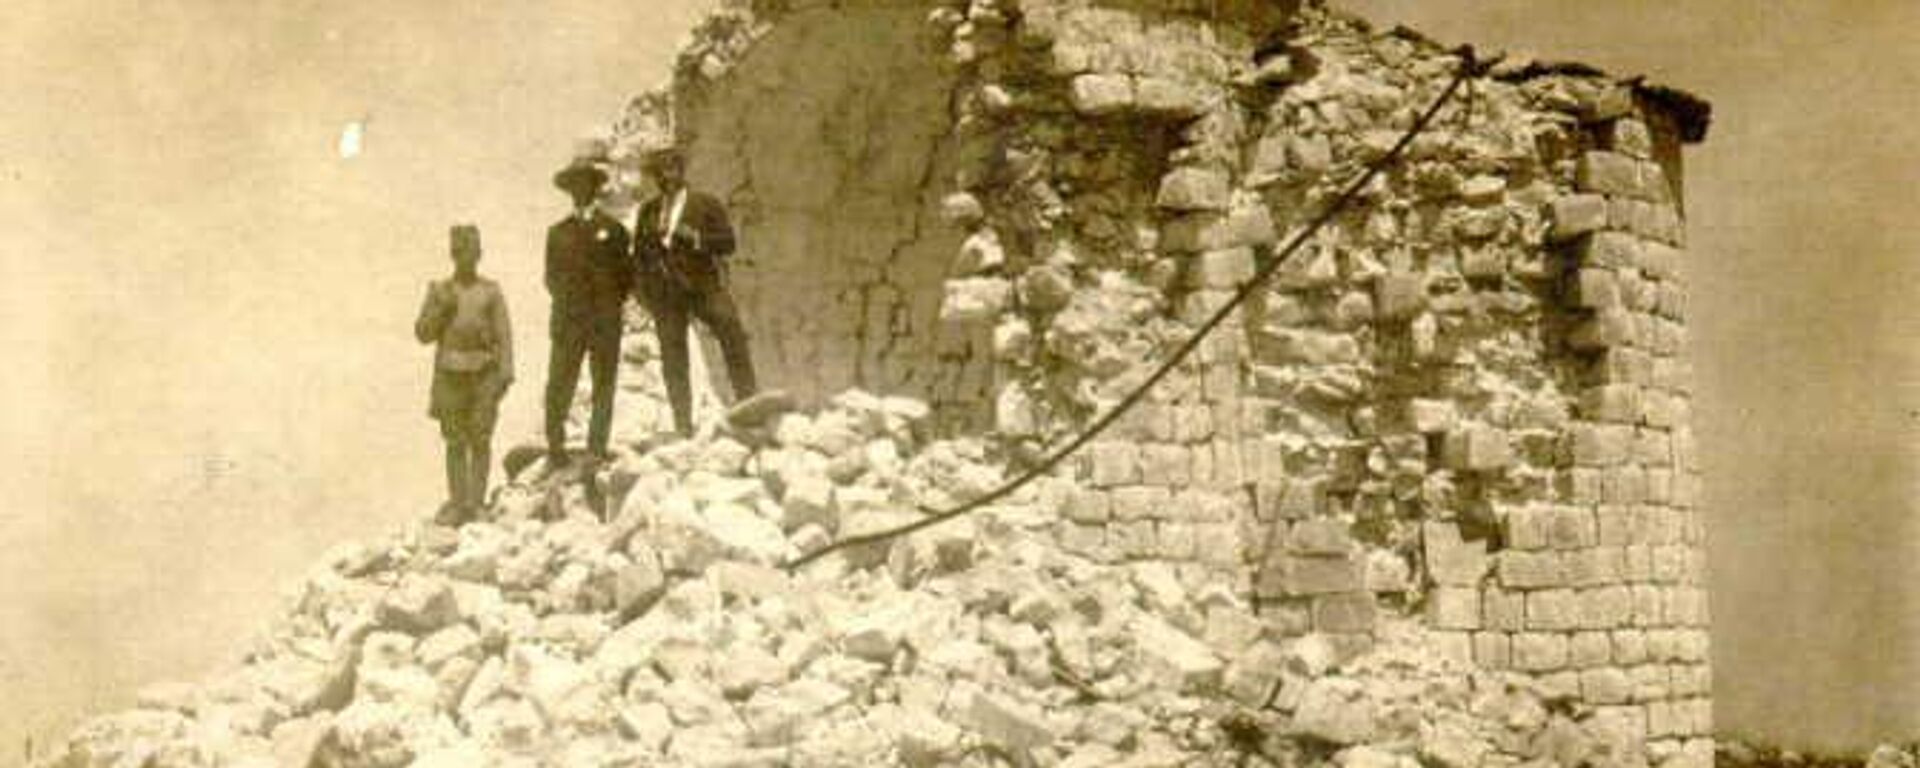 Рушевине Његошеве капеле на Ловћену 1924. године - Sputnik Србија, 1920, 27.03.2022